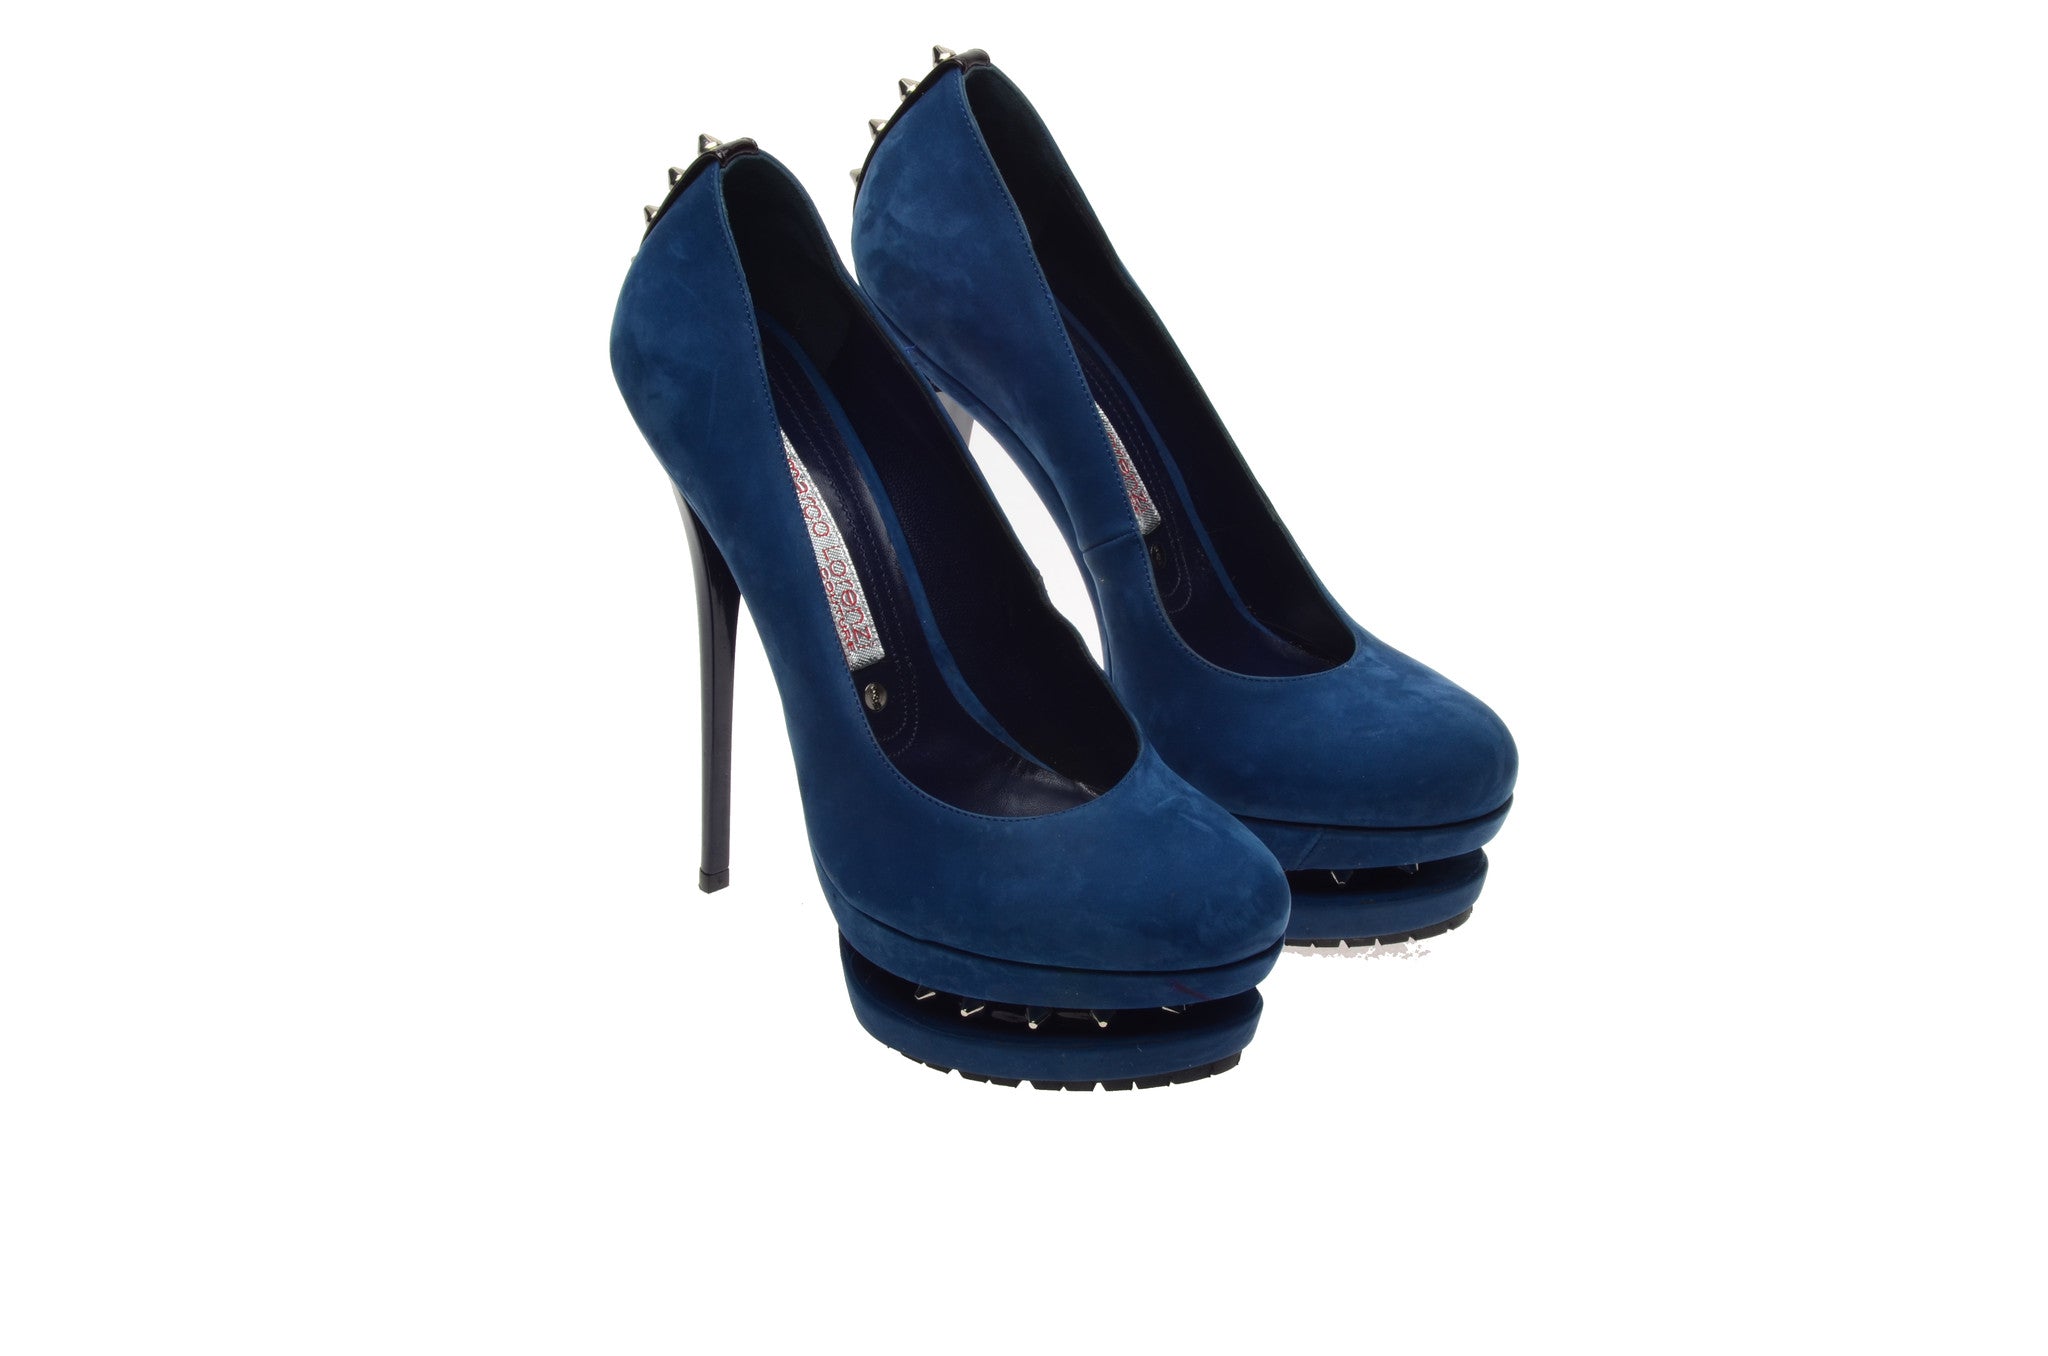 blue suede platform shoes